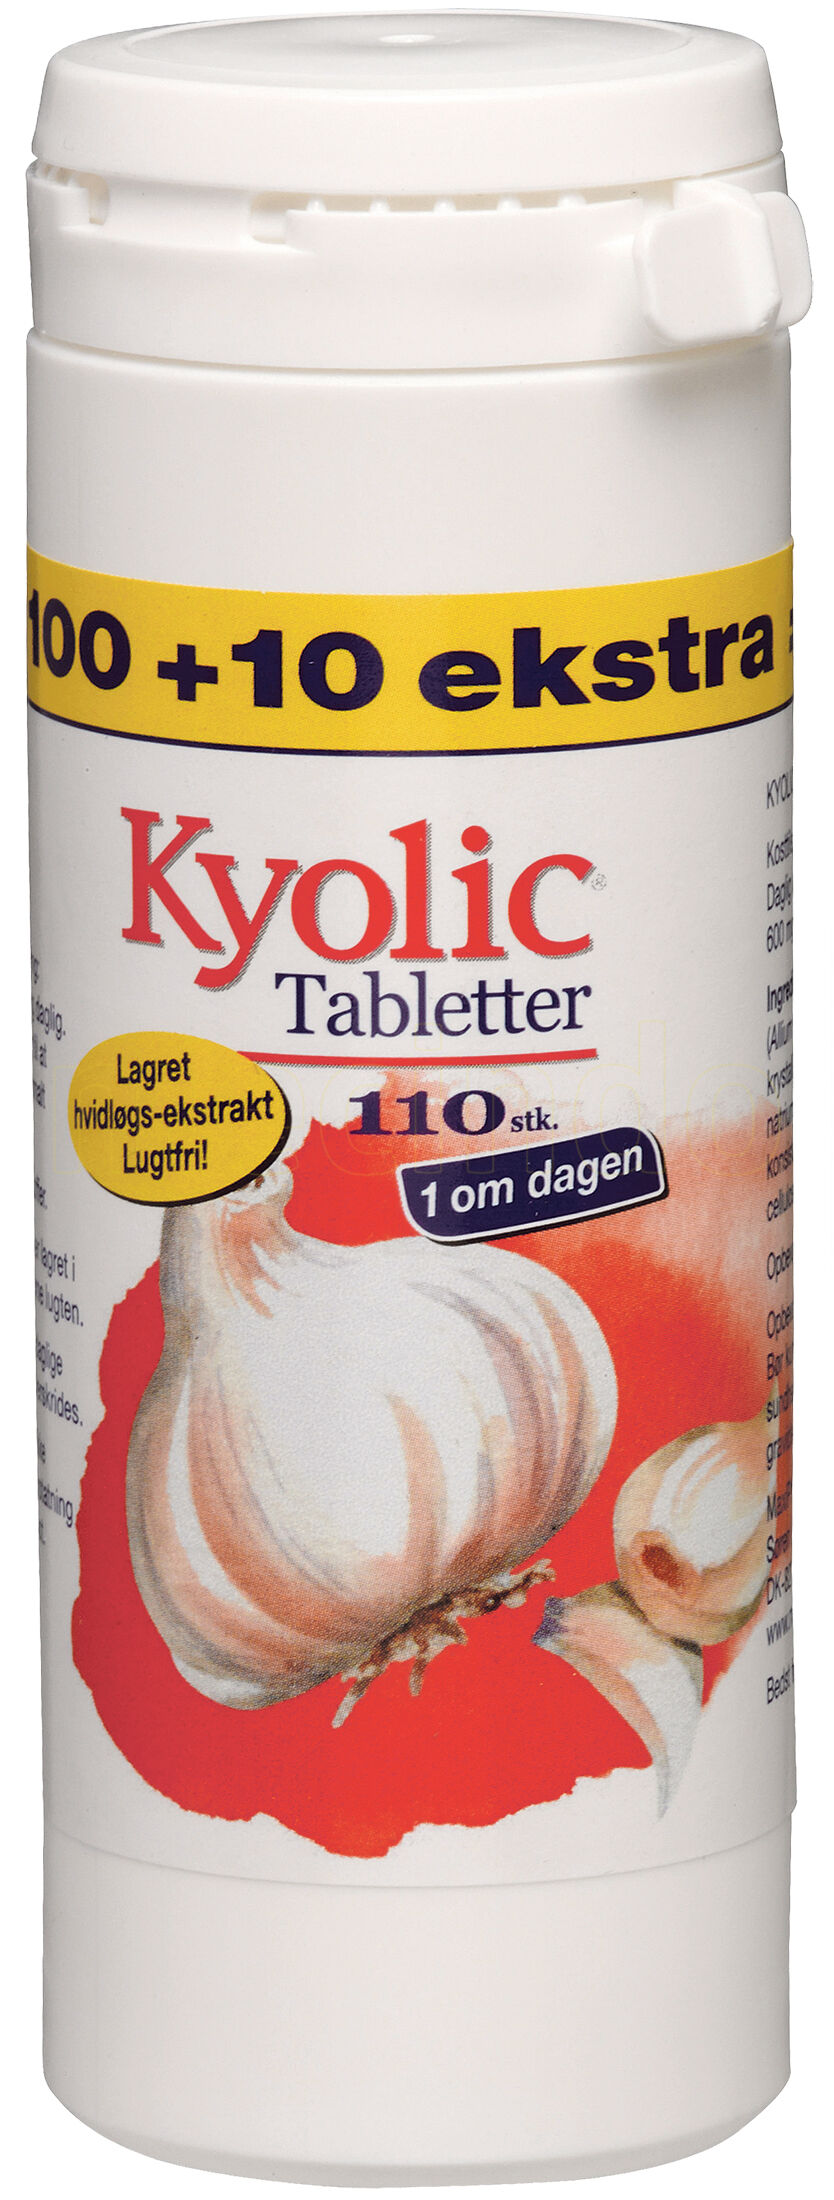 Kyolic 1 Om Dagen - 110 Tabletter